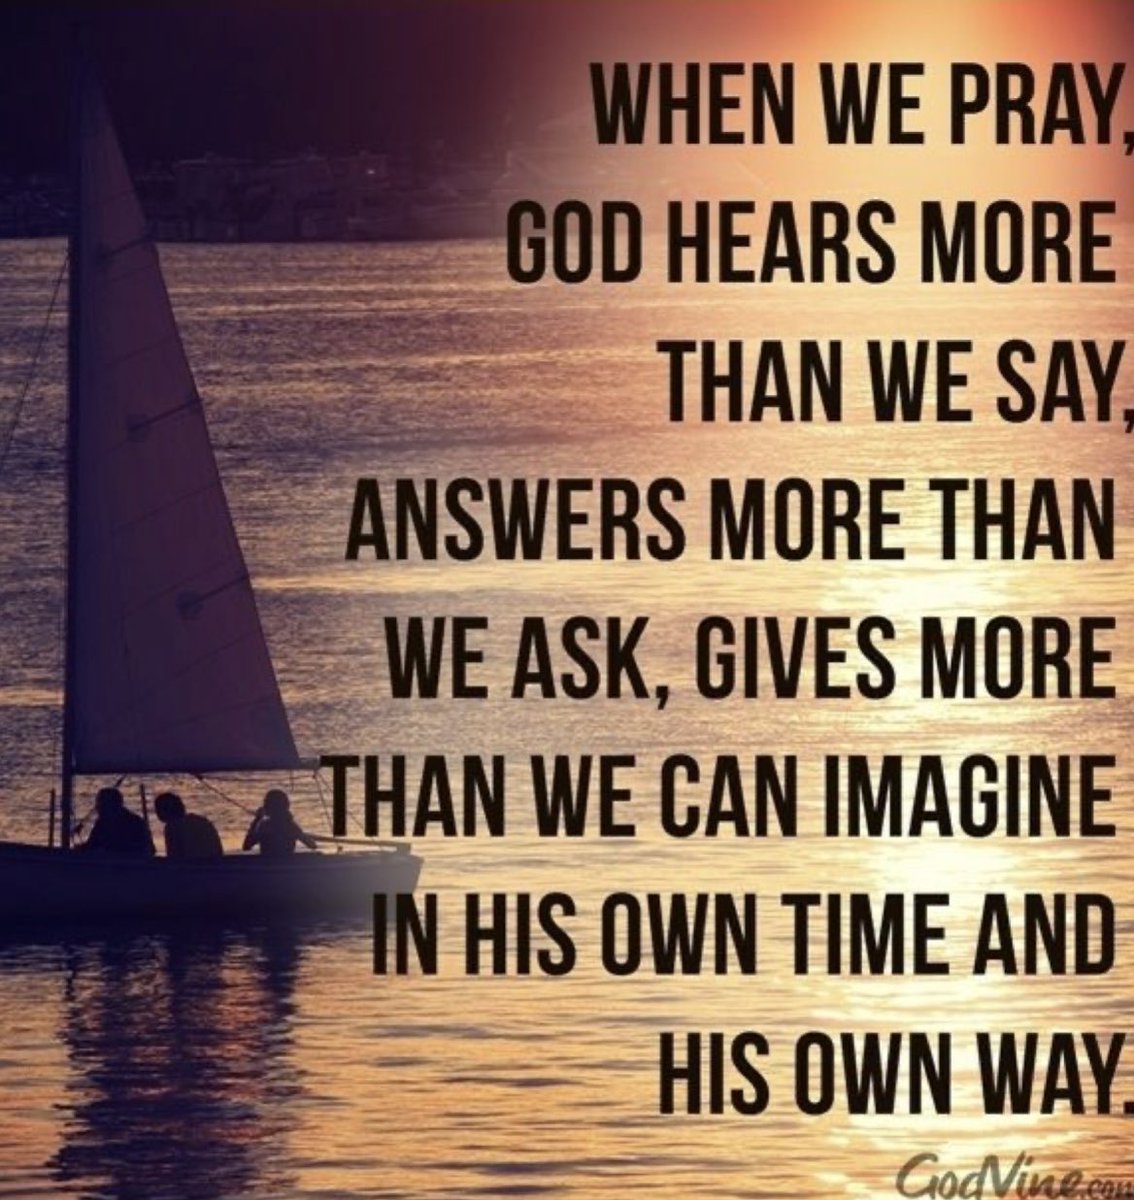 #TakeTime #Pray